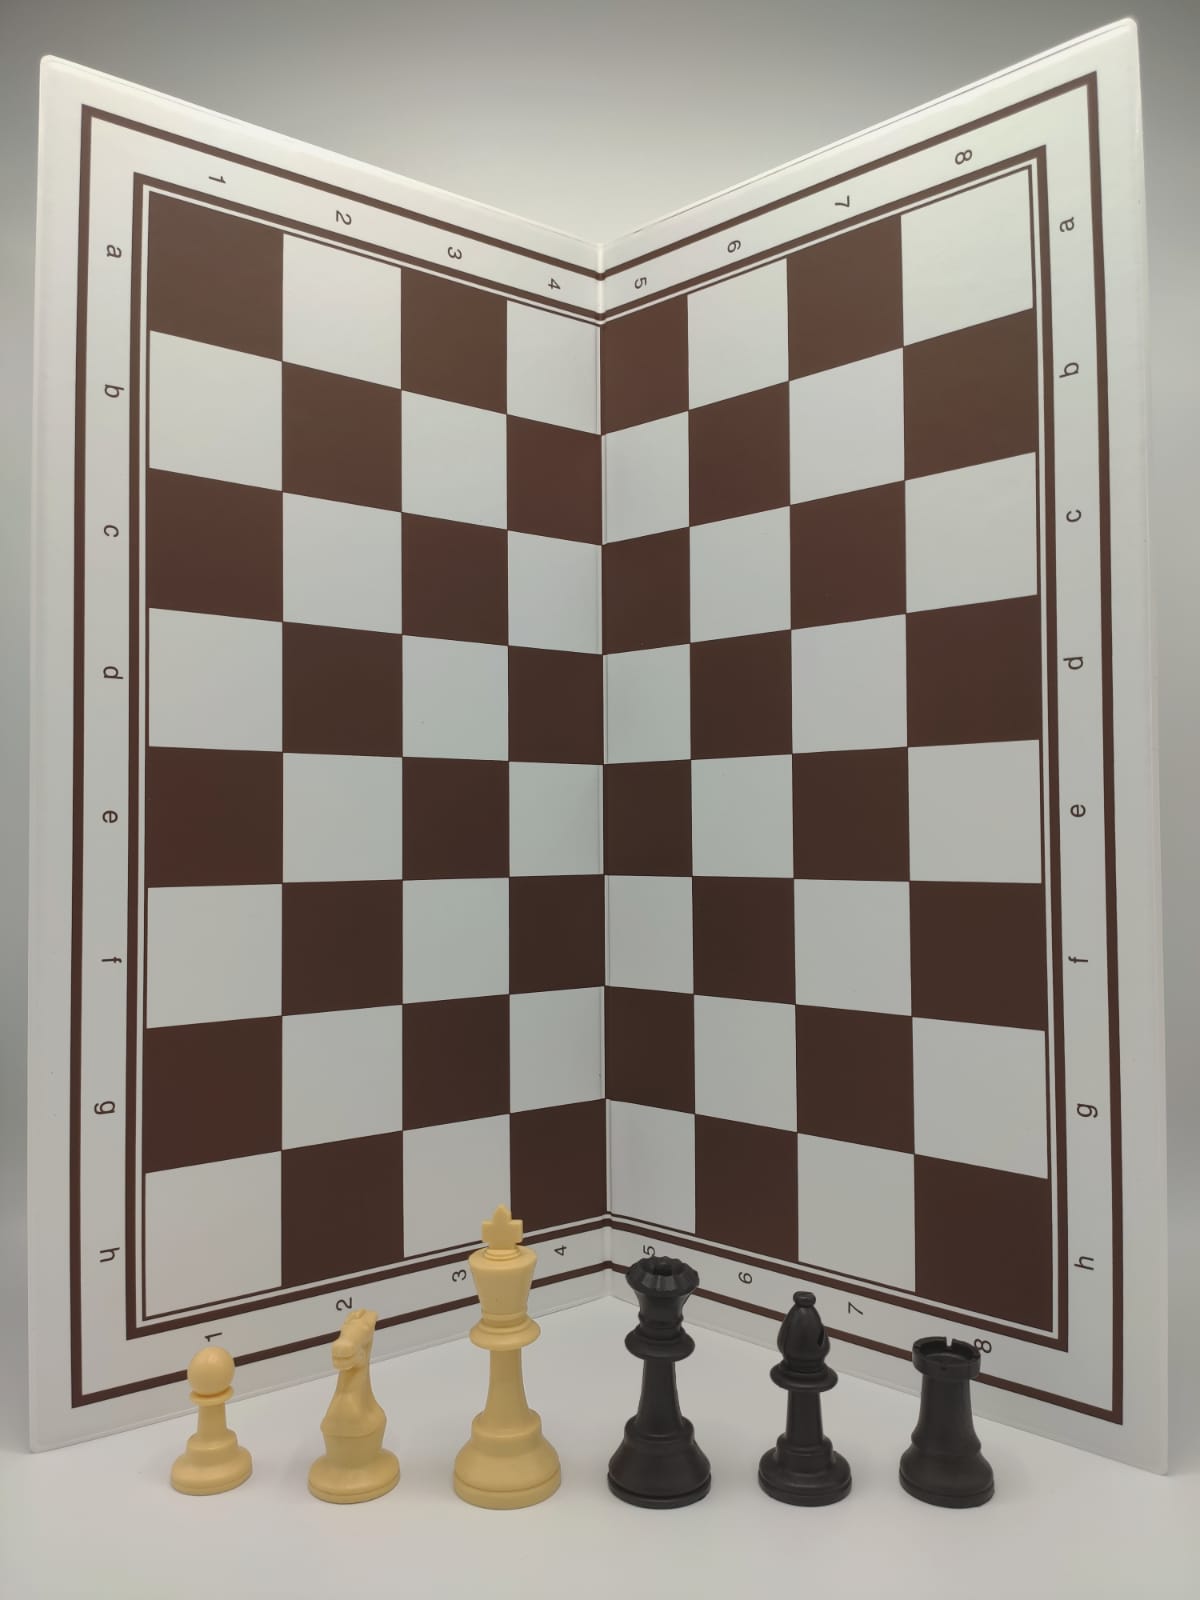 S5 Kunststof schaakstukken Zwart/Creme, verzwaard, Staunton maat 5